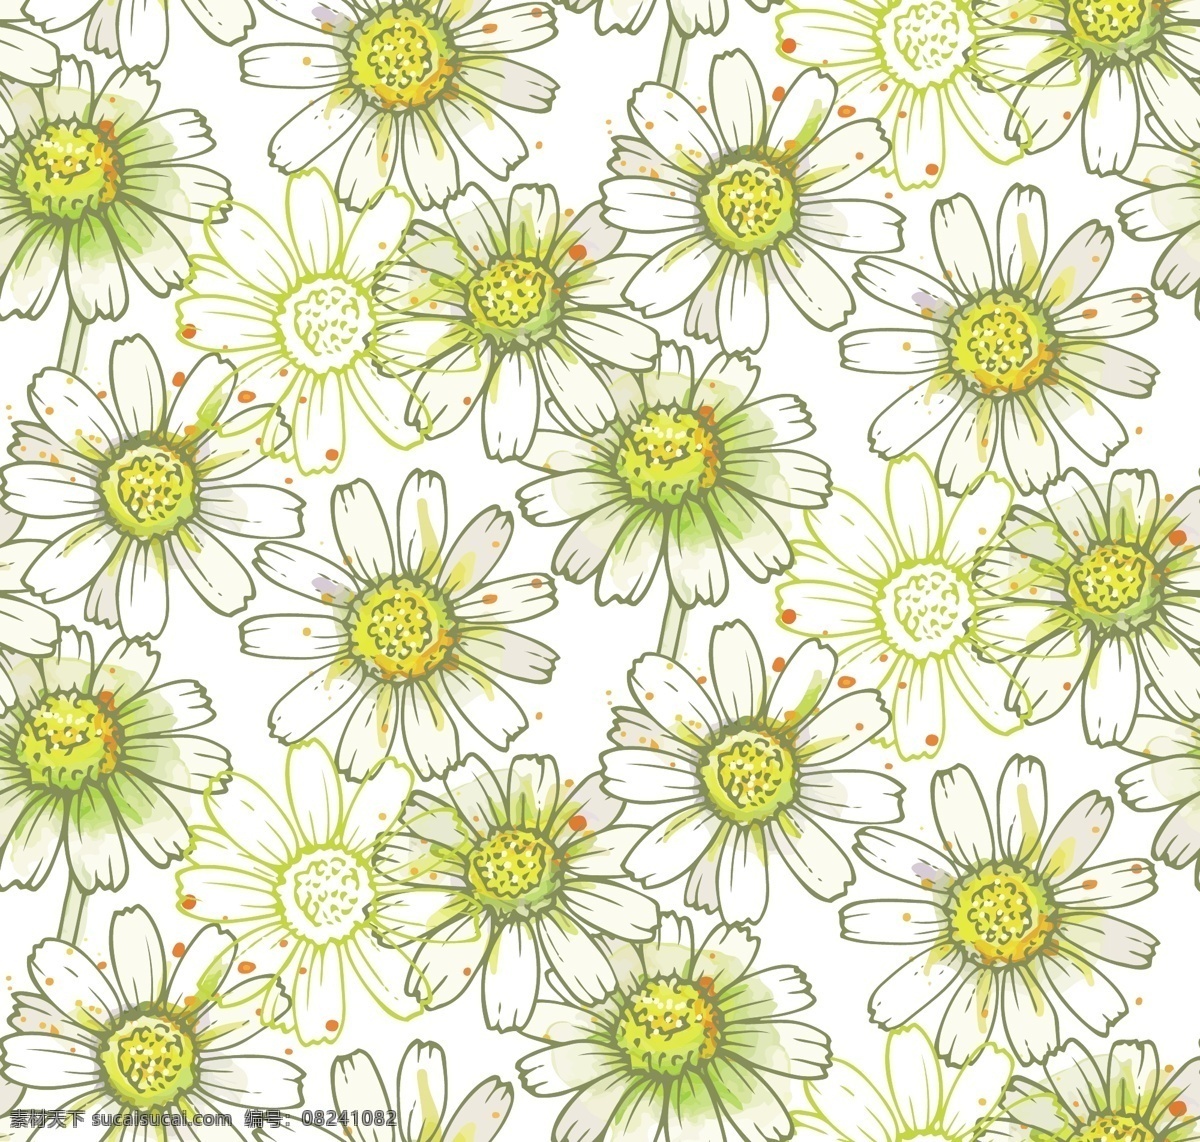 高清 国画 手绘 数码图案 抱枕 自然 花卉 印染 纺织 壁纸 背景 中式画 文化艺术 手绘花